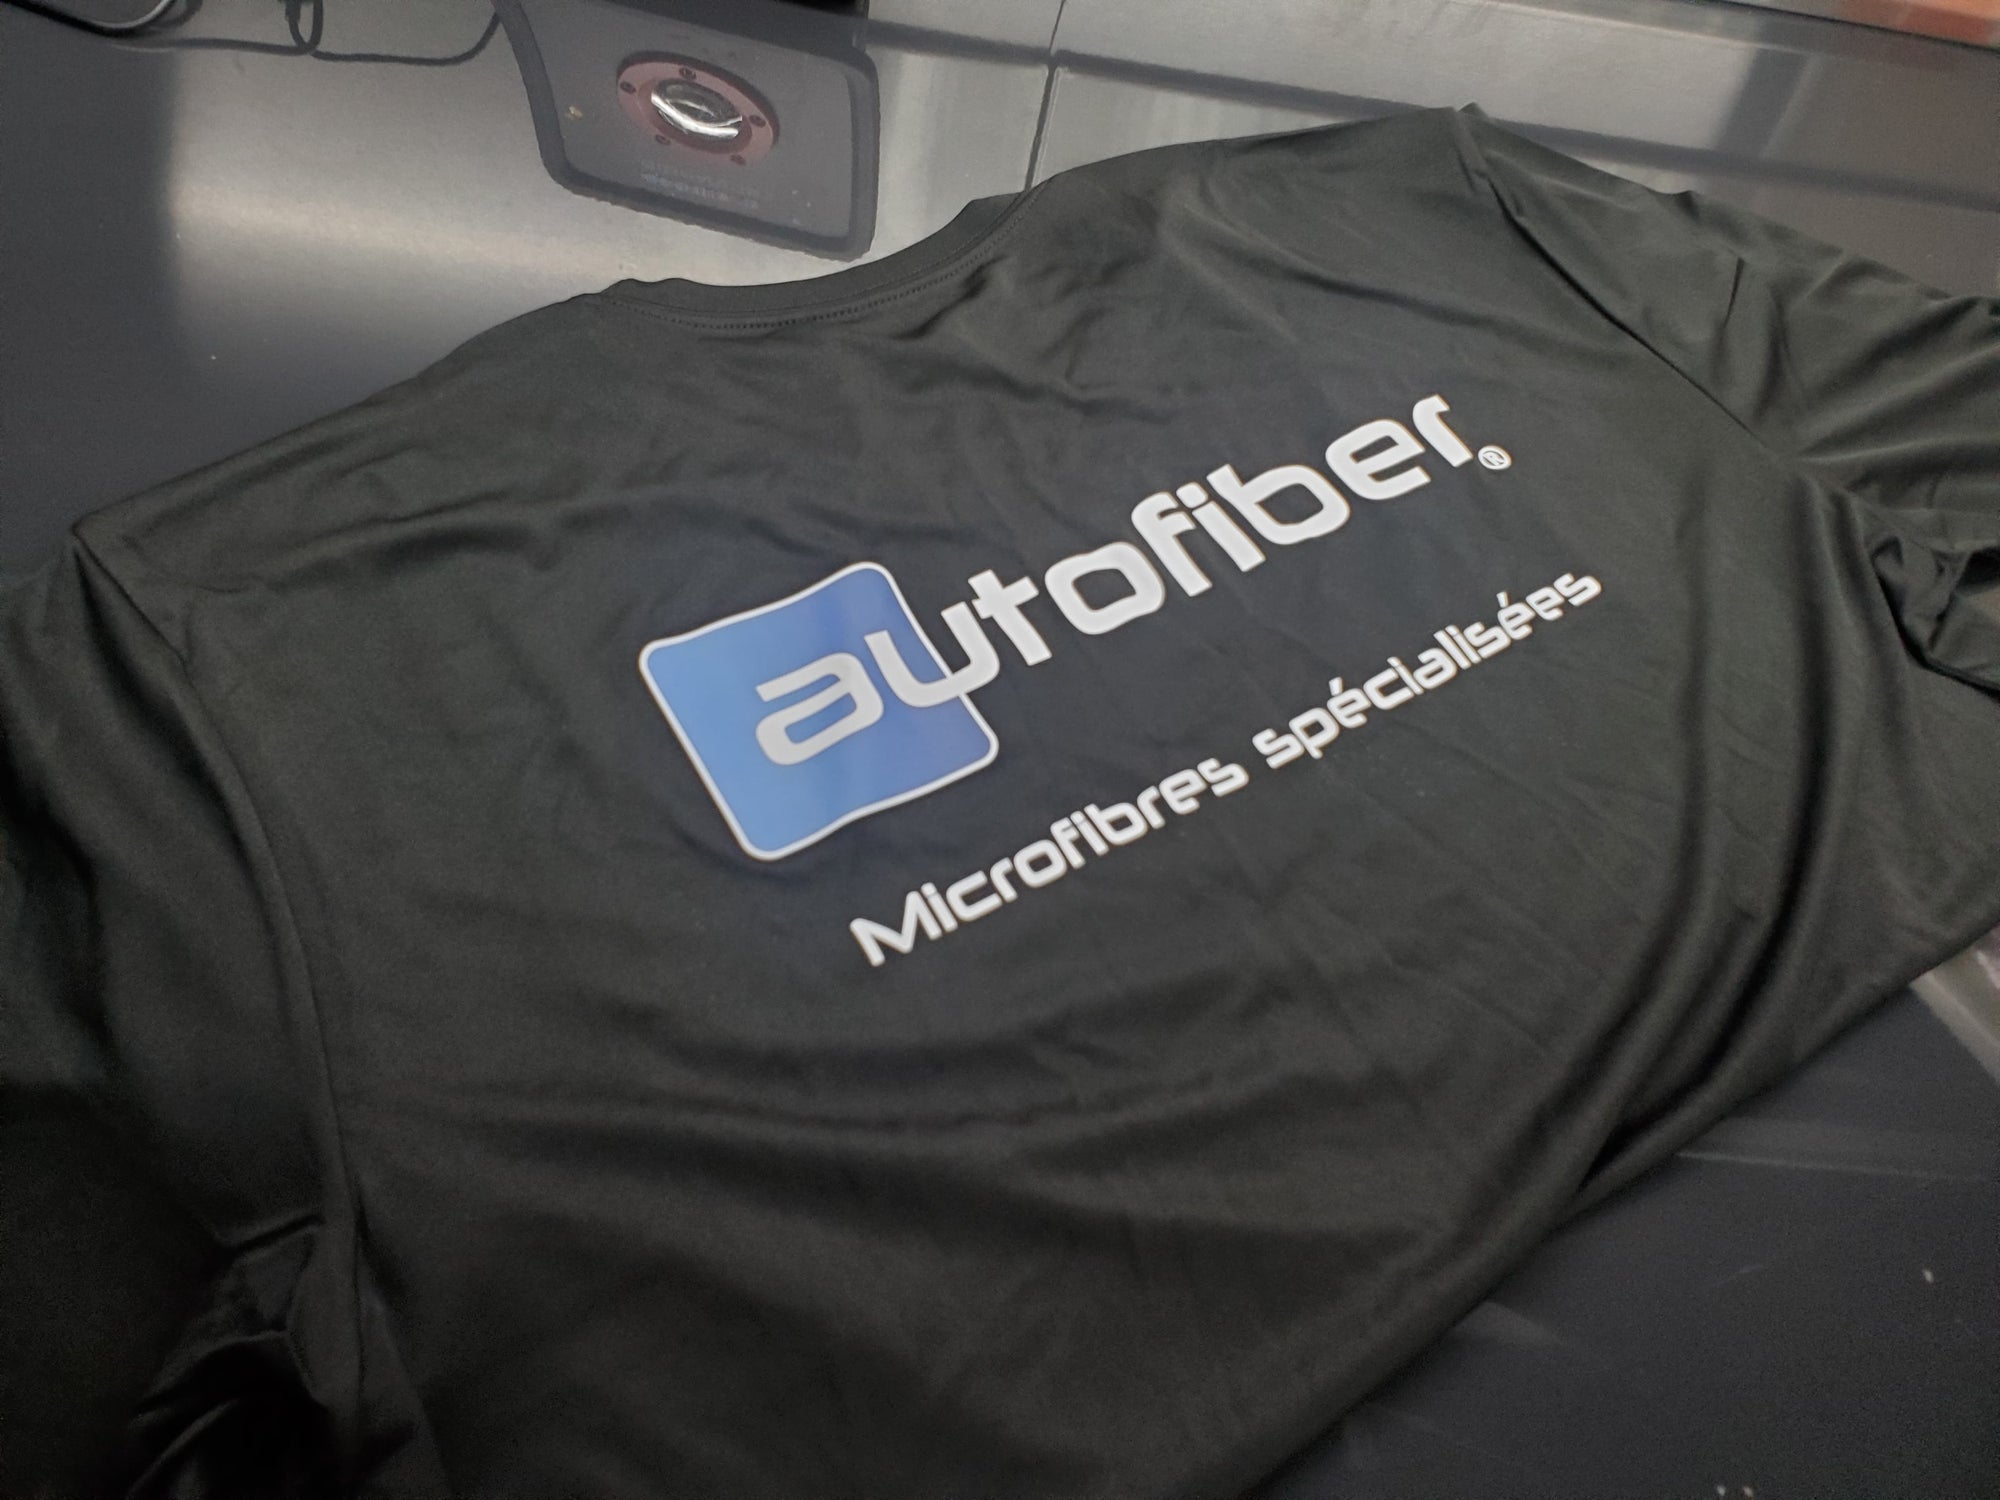 Autofiber "Microfibre Spécialisées" T-Shirt